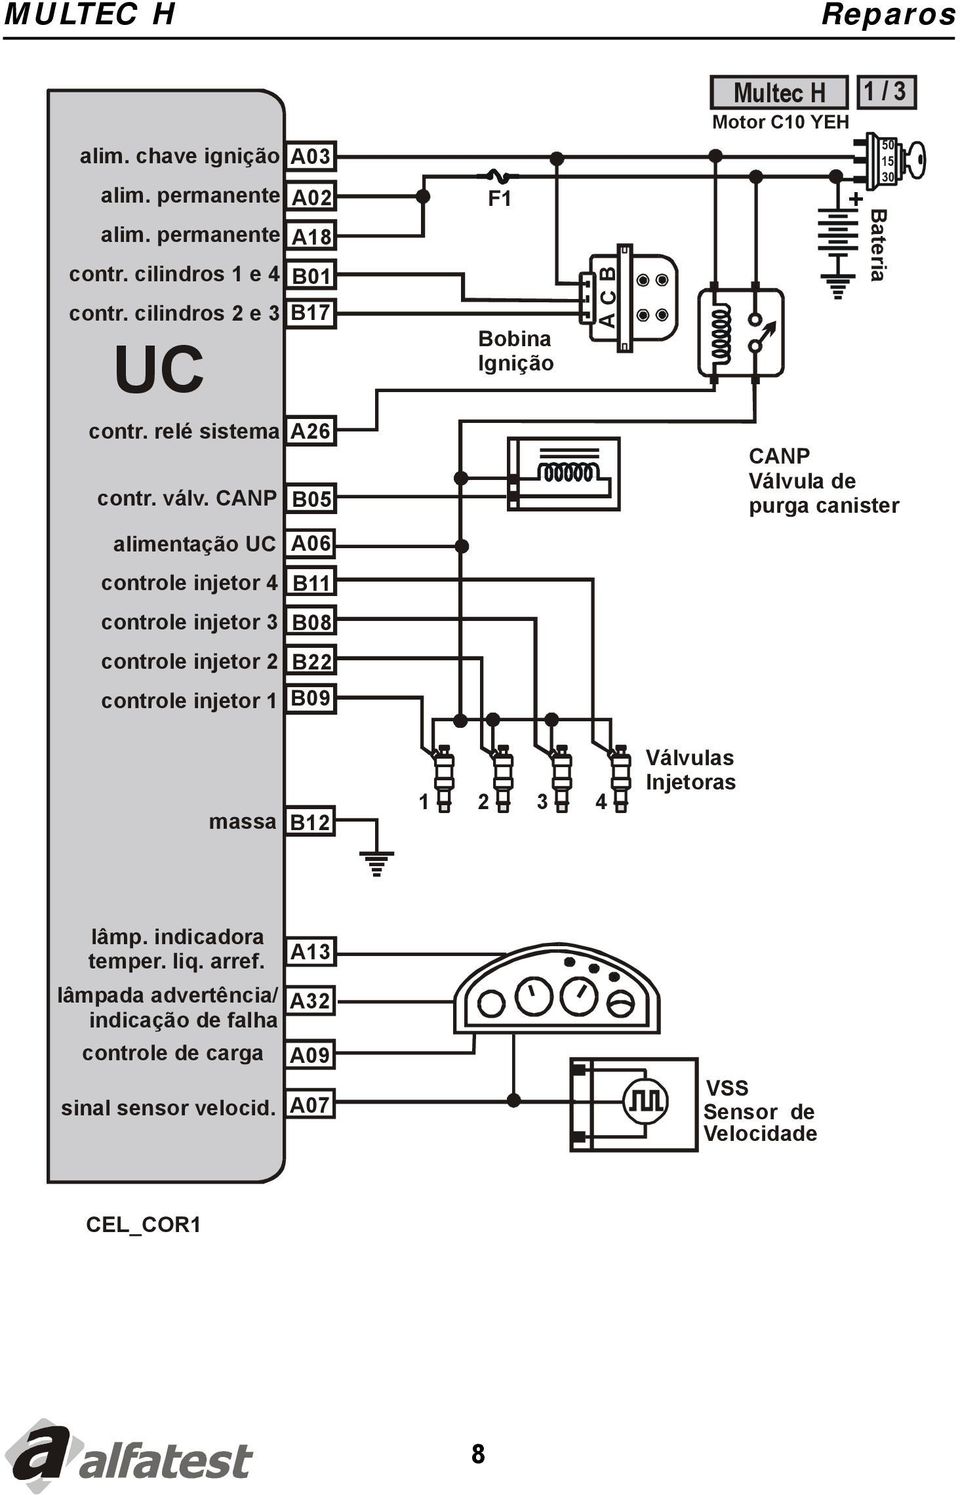 CANP B05 CANP Válvula de purga canister alimentação UC A06 controle injetor 4 B11 controle injetor 3 B08 controle injetor 2 B22 controle injetor 1 B09